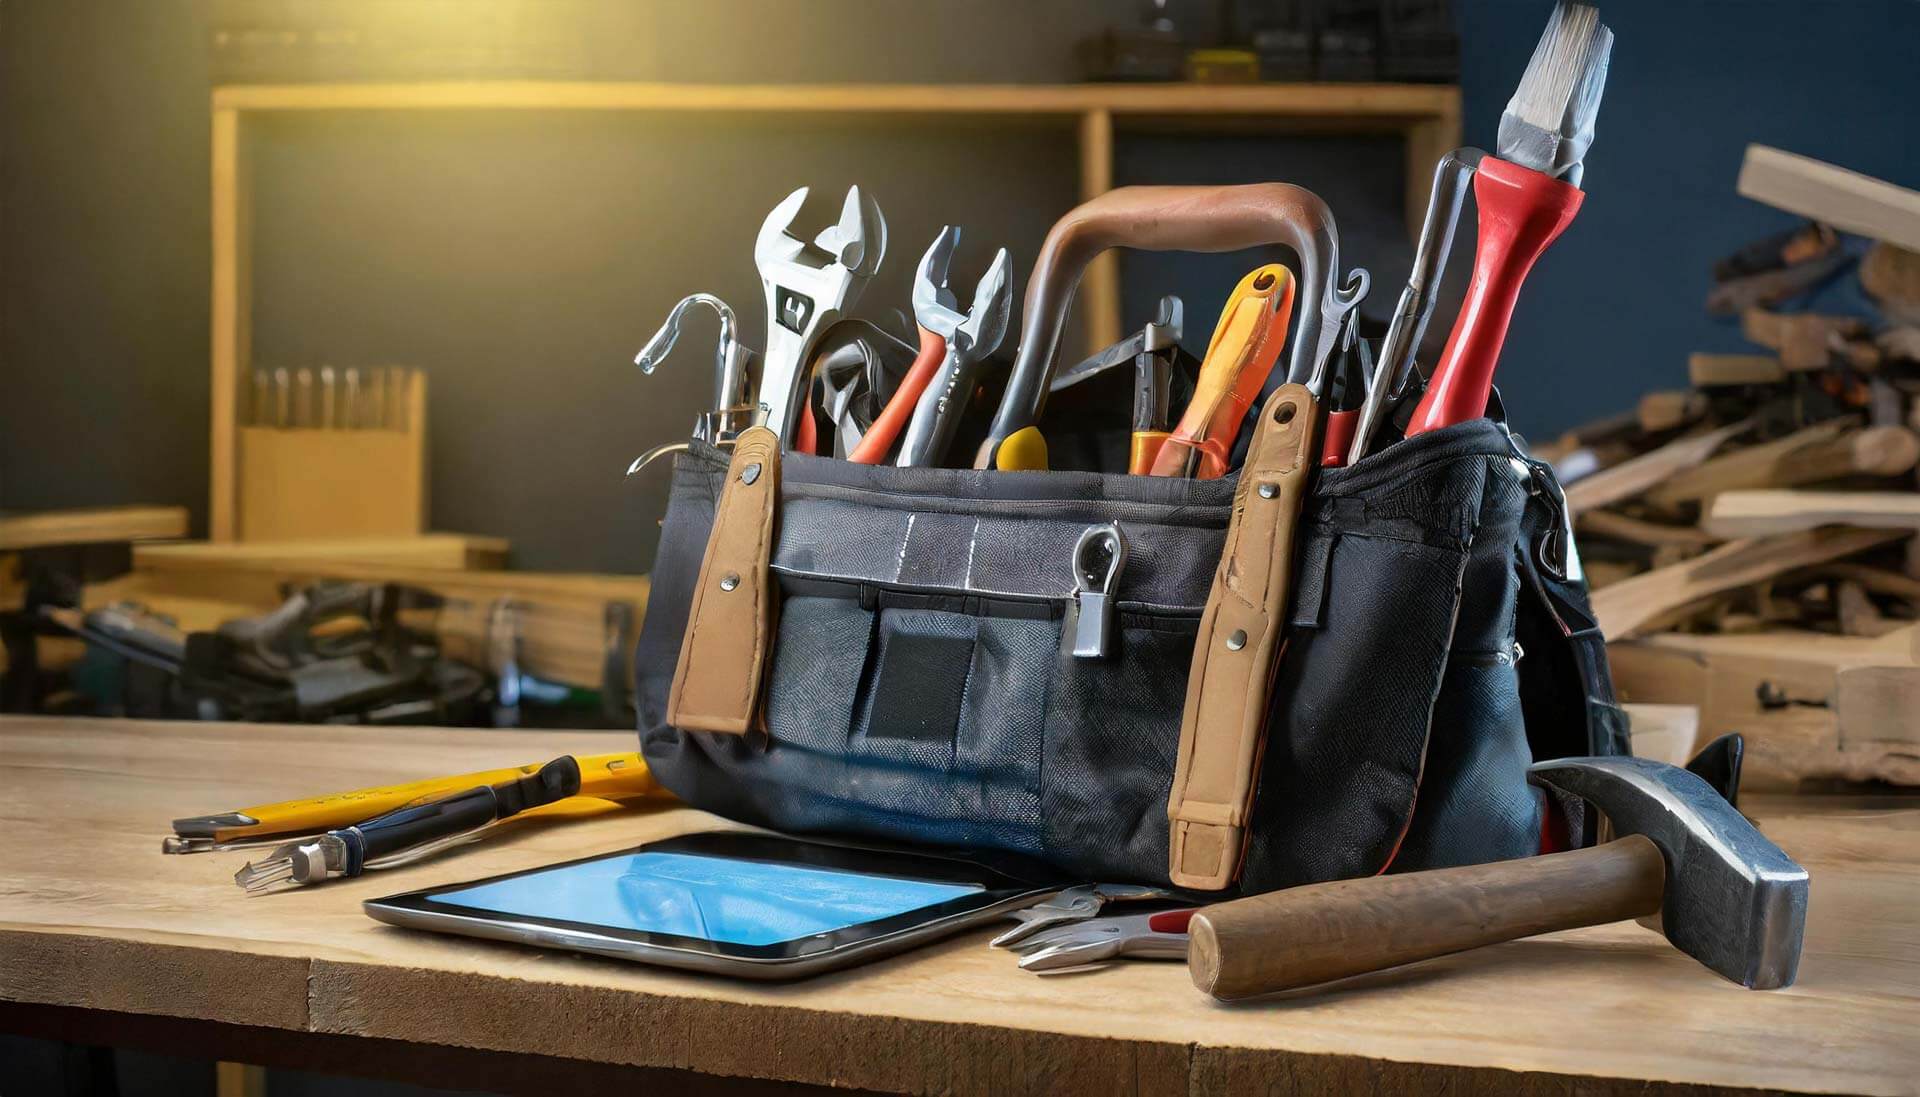 Eine Werkzeugtasche mit verschiedenen Werkzeugen und einem Tablet auf einem Holzstuhl.